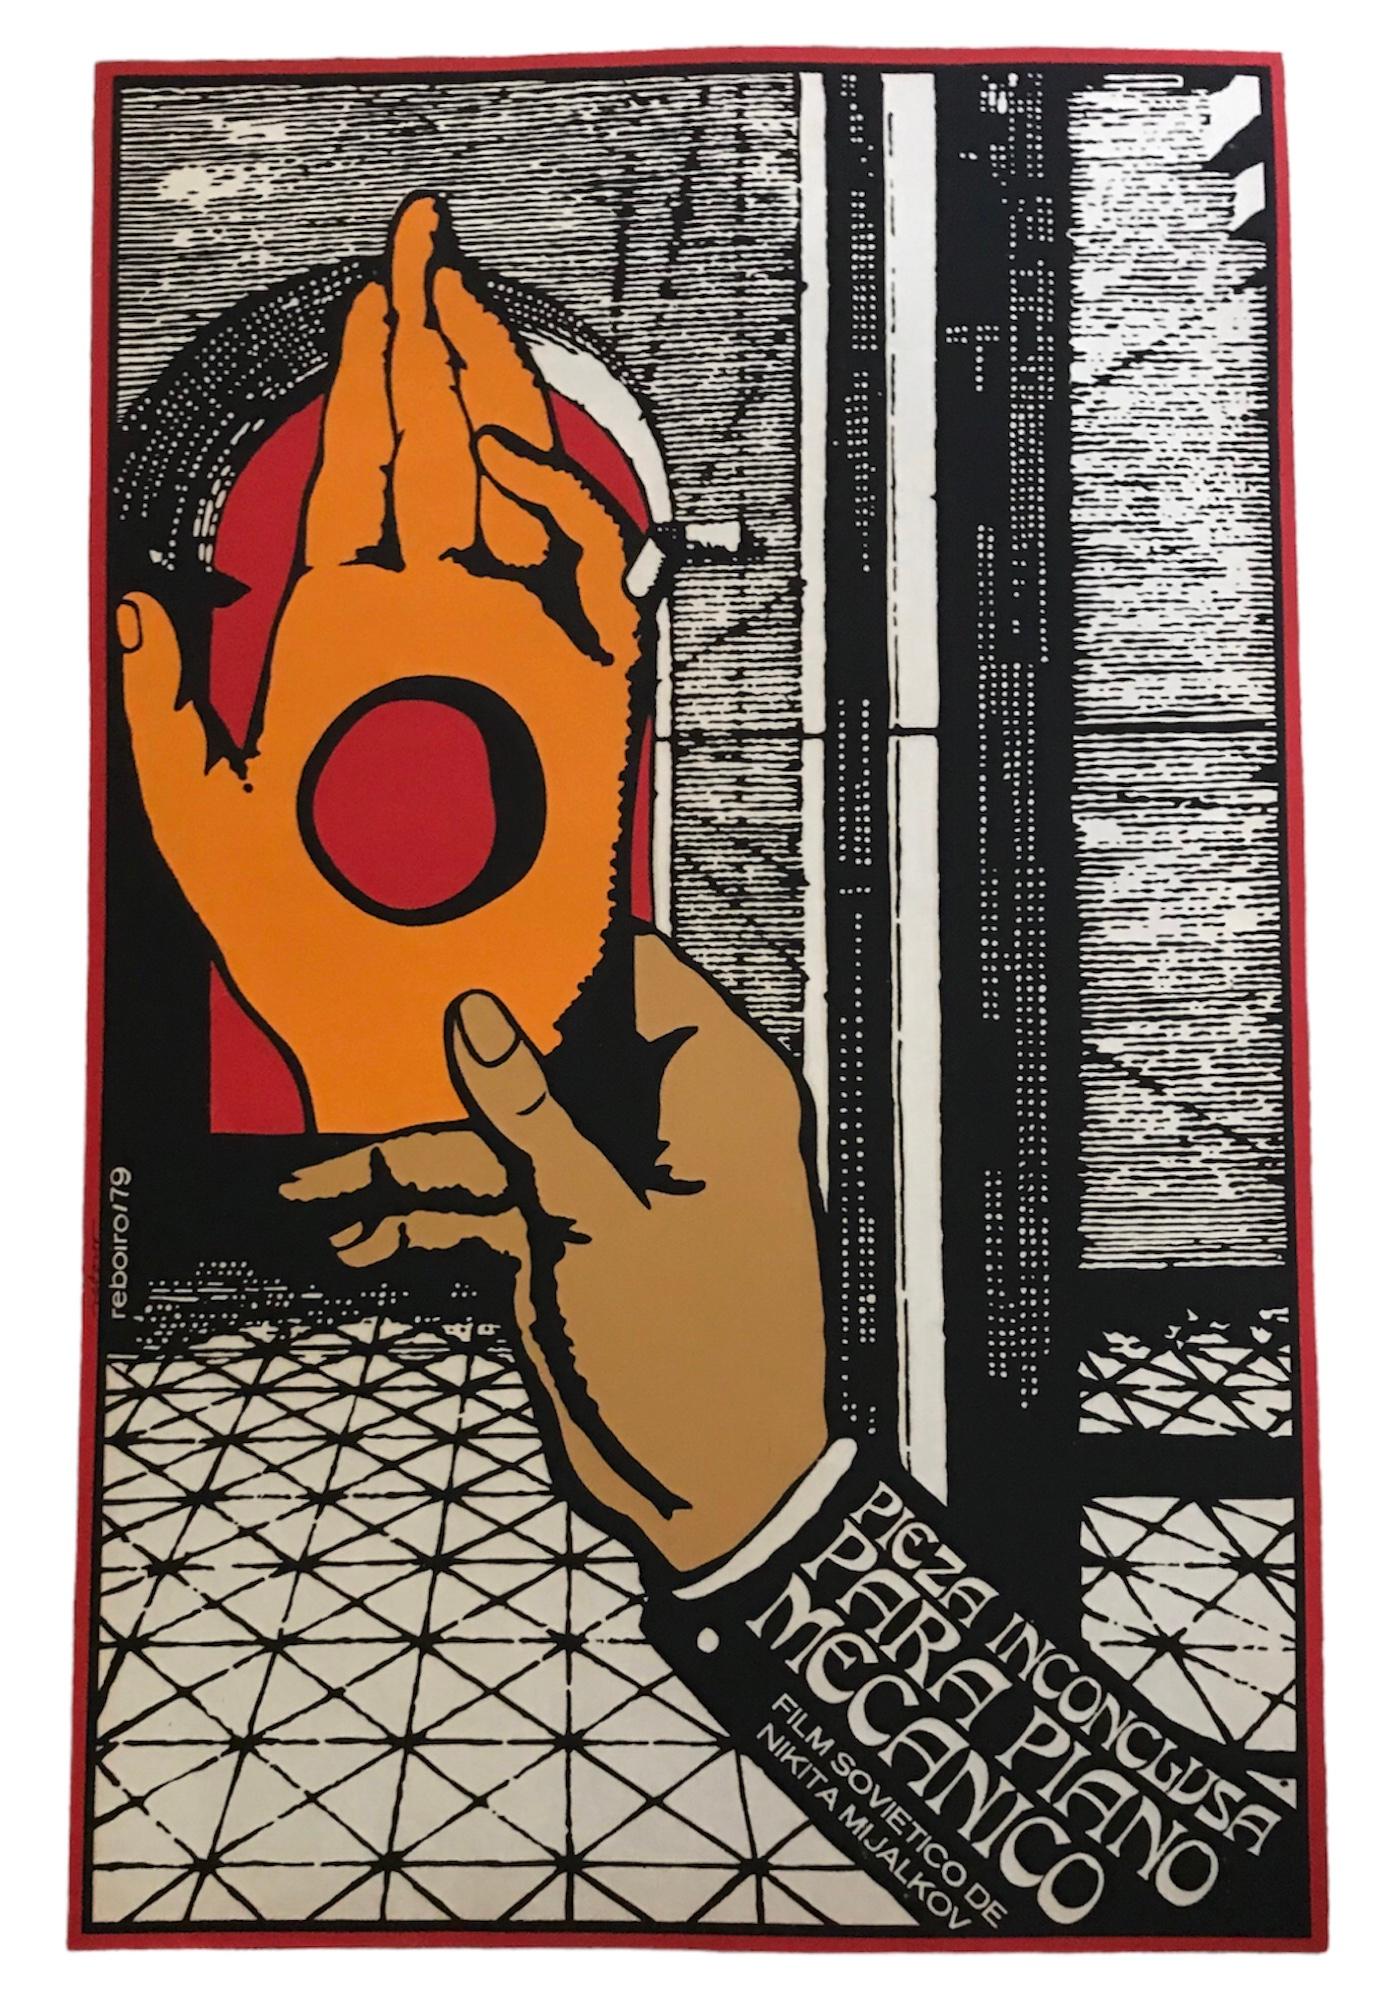 1979 Kubanisches Siebdruckplakat für den sowjetischen Film Pieza Inconclusa des russischen Regisseurs und Schauspielers Nikita Mijalkov (geb. 1945).   Surrealistisches Siebdruckkunstwerk von  Antonio Fernández Reboiro. Es erinnert an Rene Magrite